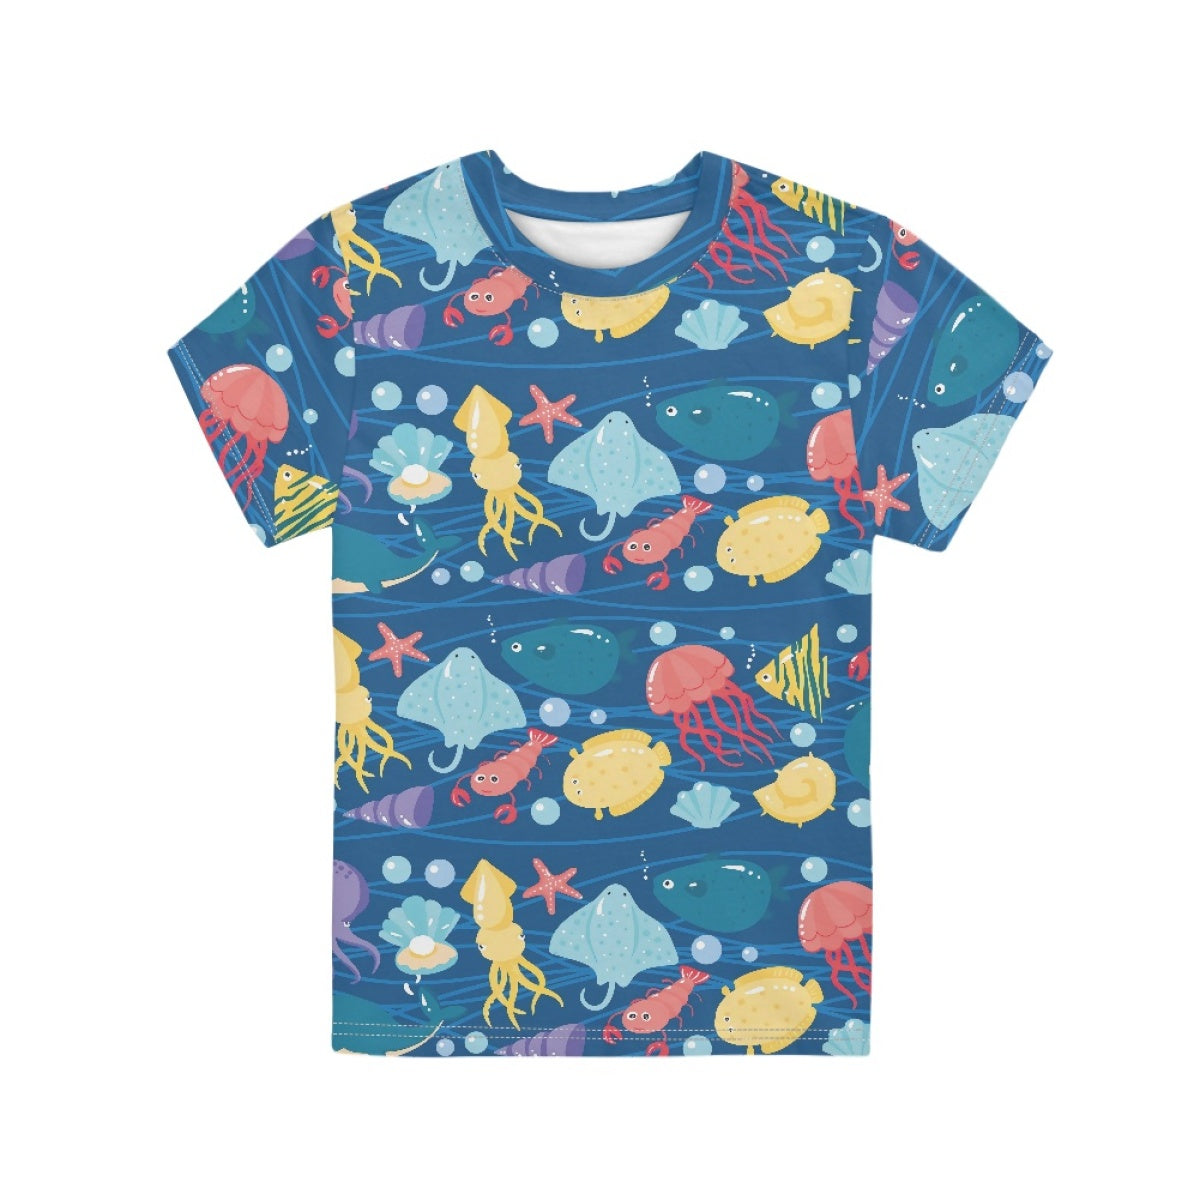 The Underwater World Kids T-Shirt